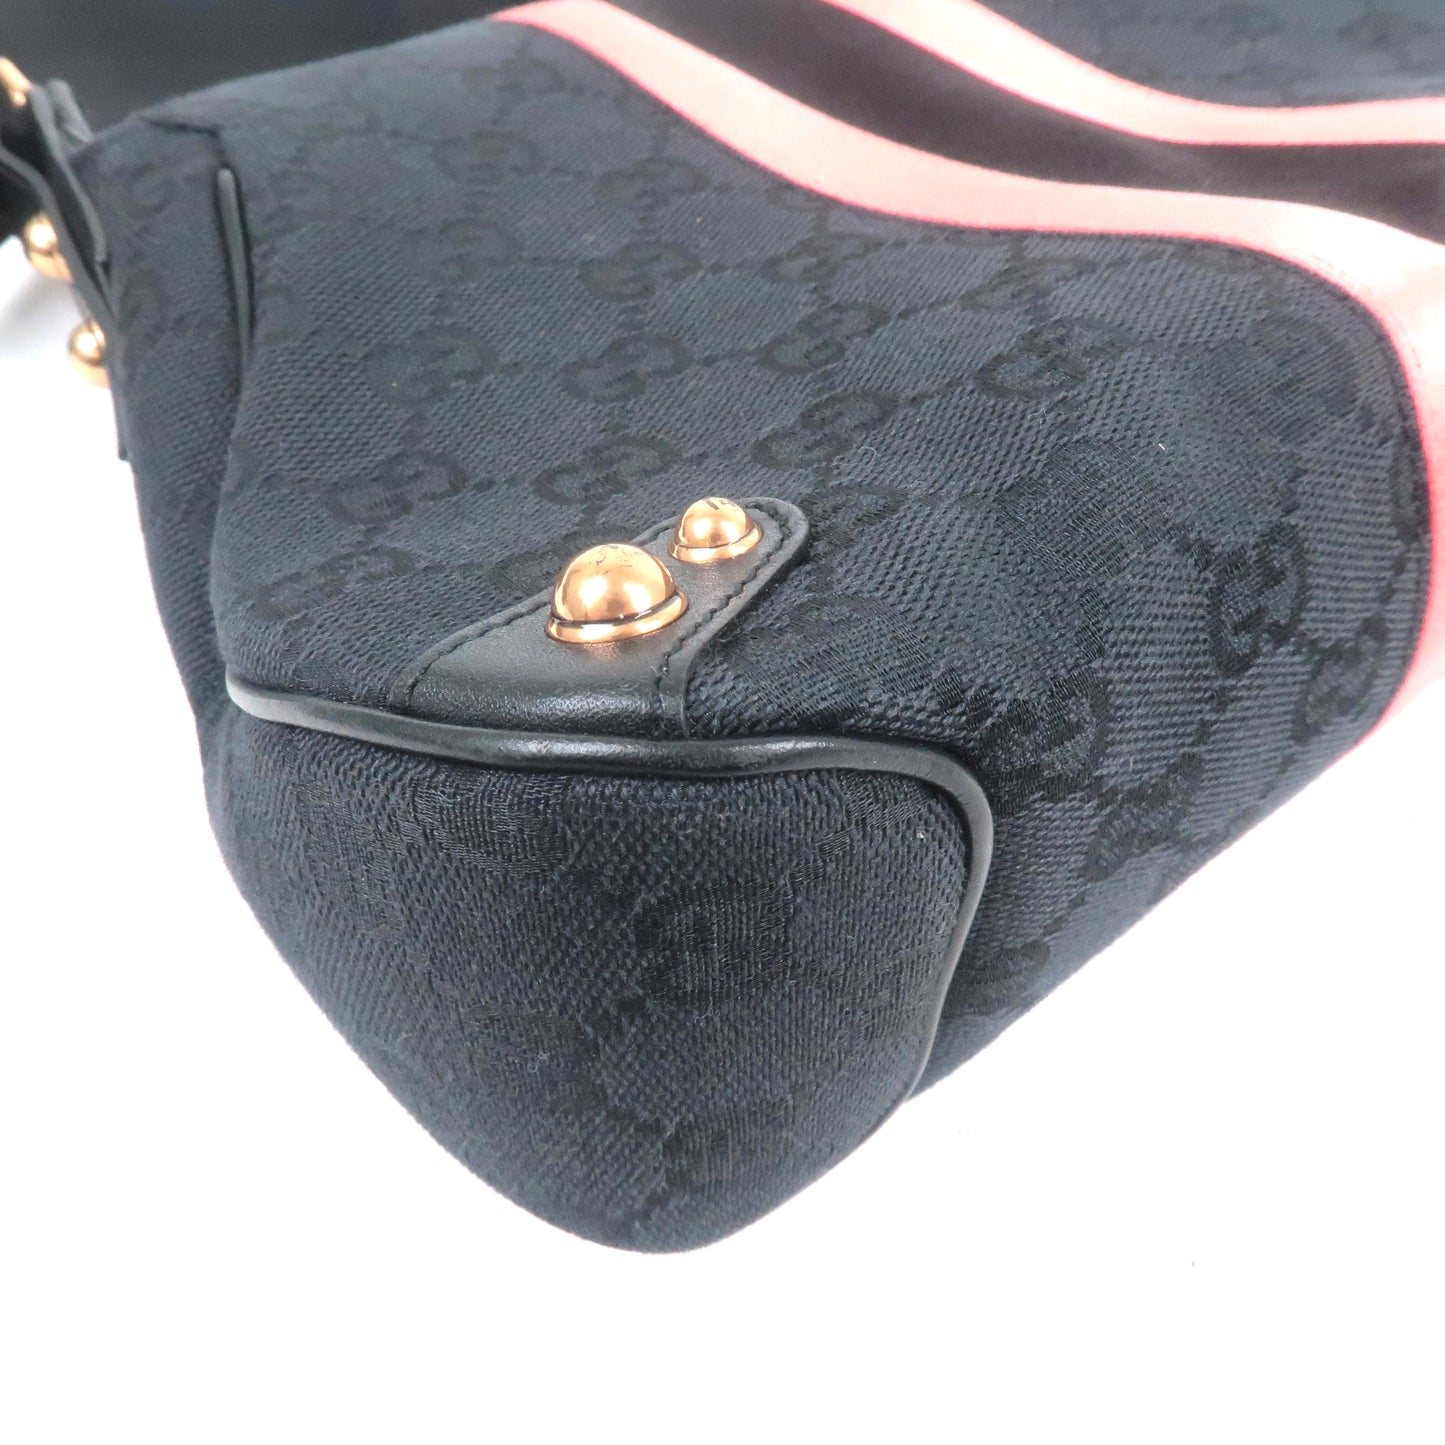 GUCCI Horsebit GG Canvas Leather Shoulder Bag Black Pink 129699